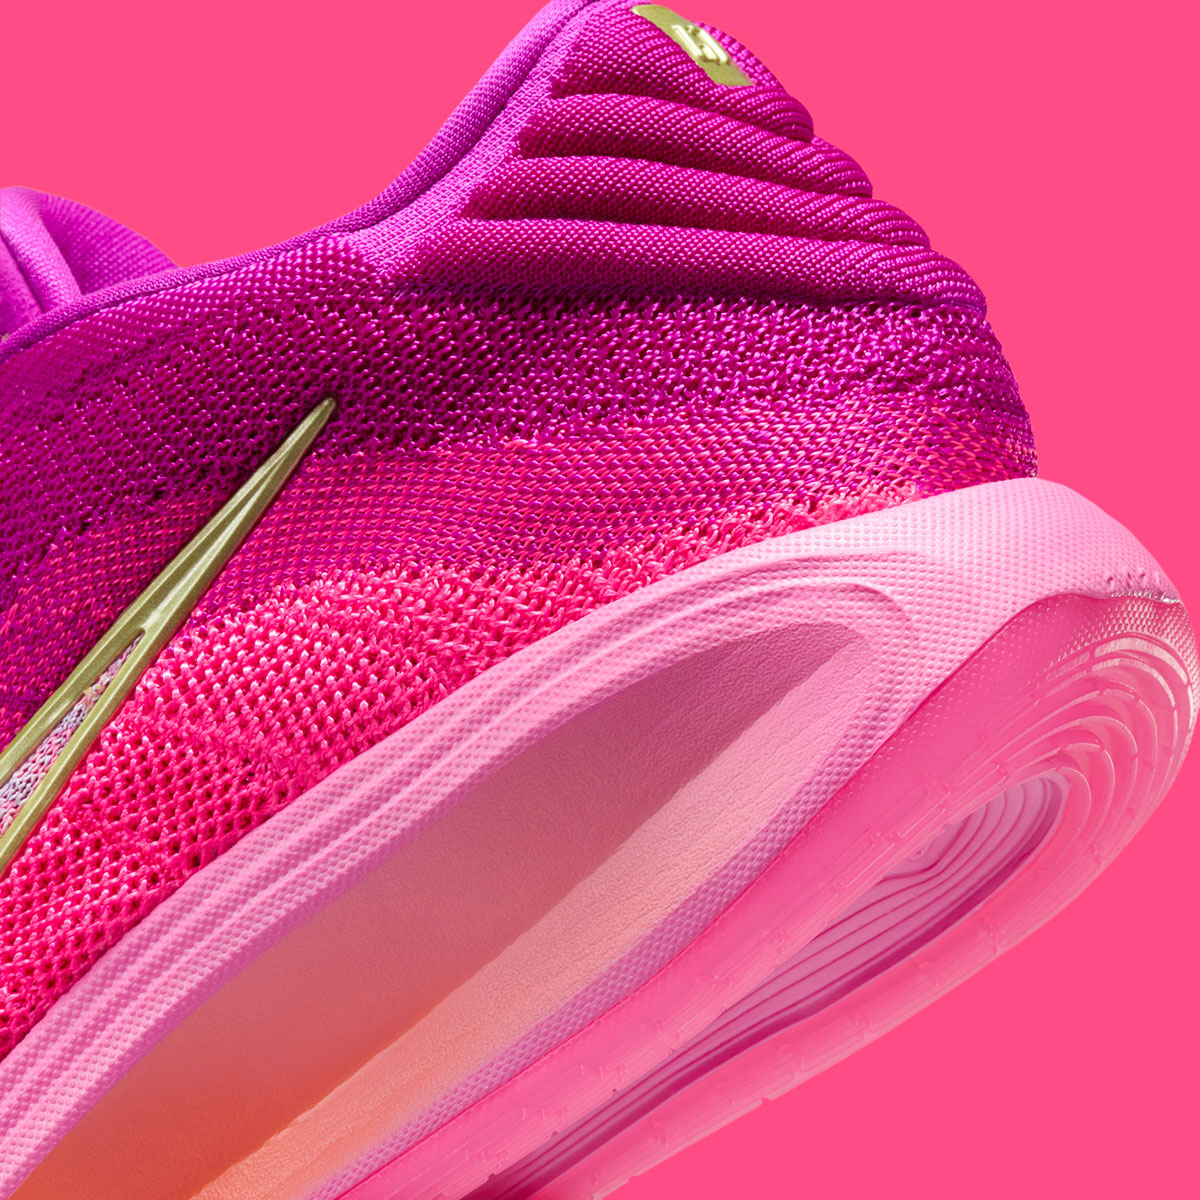 Nike Zoom Gt Hustle 3 Hyper Pink Vivid Grape Total Orange Fv5953 601 4